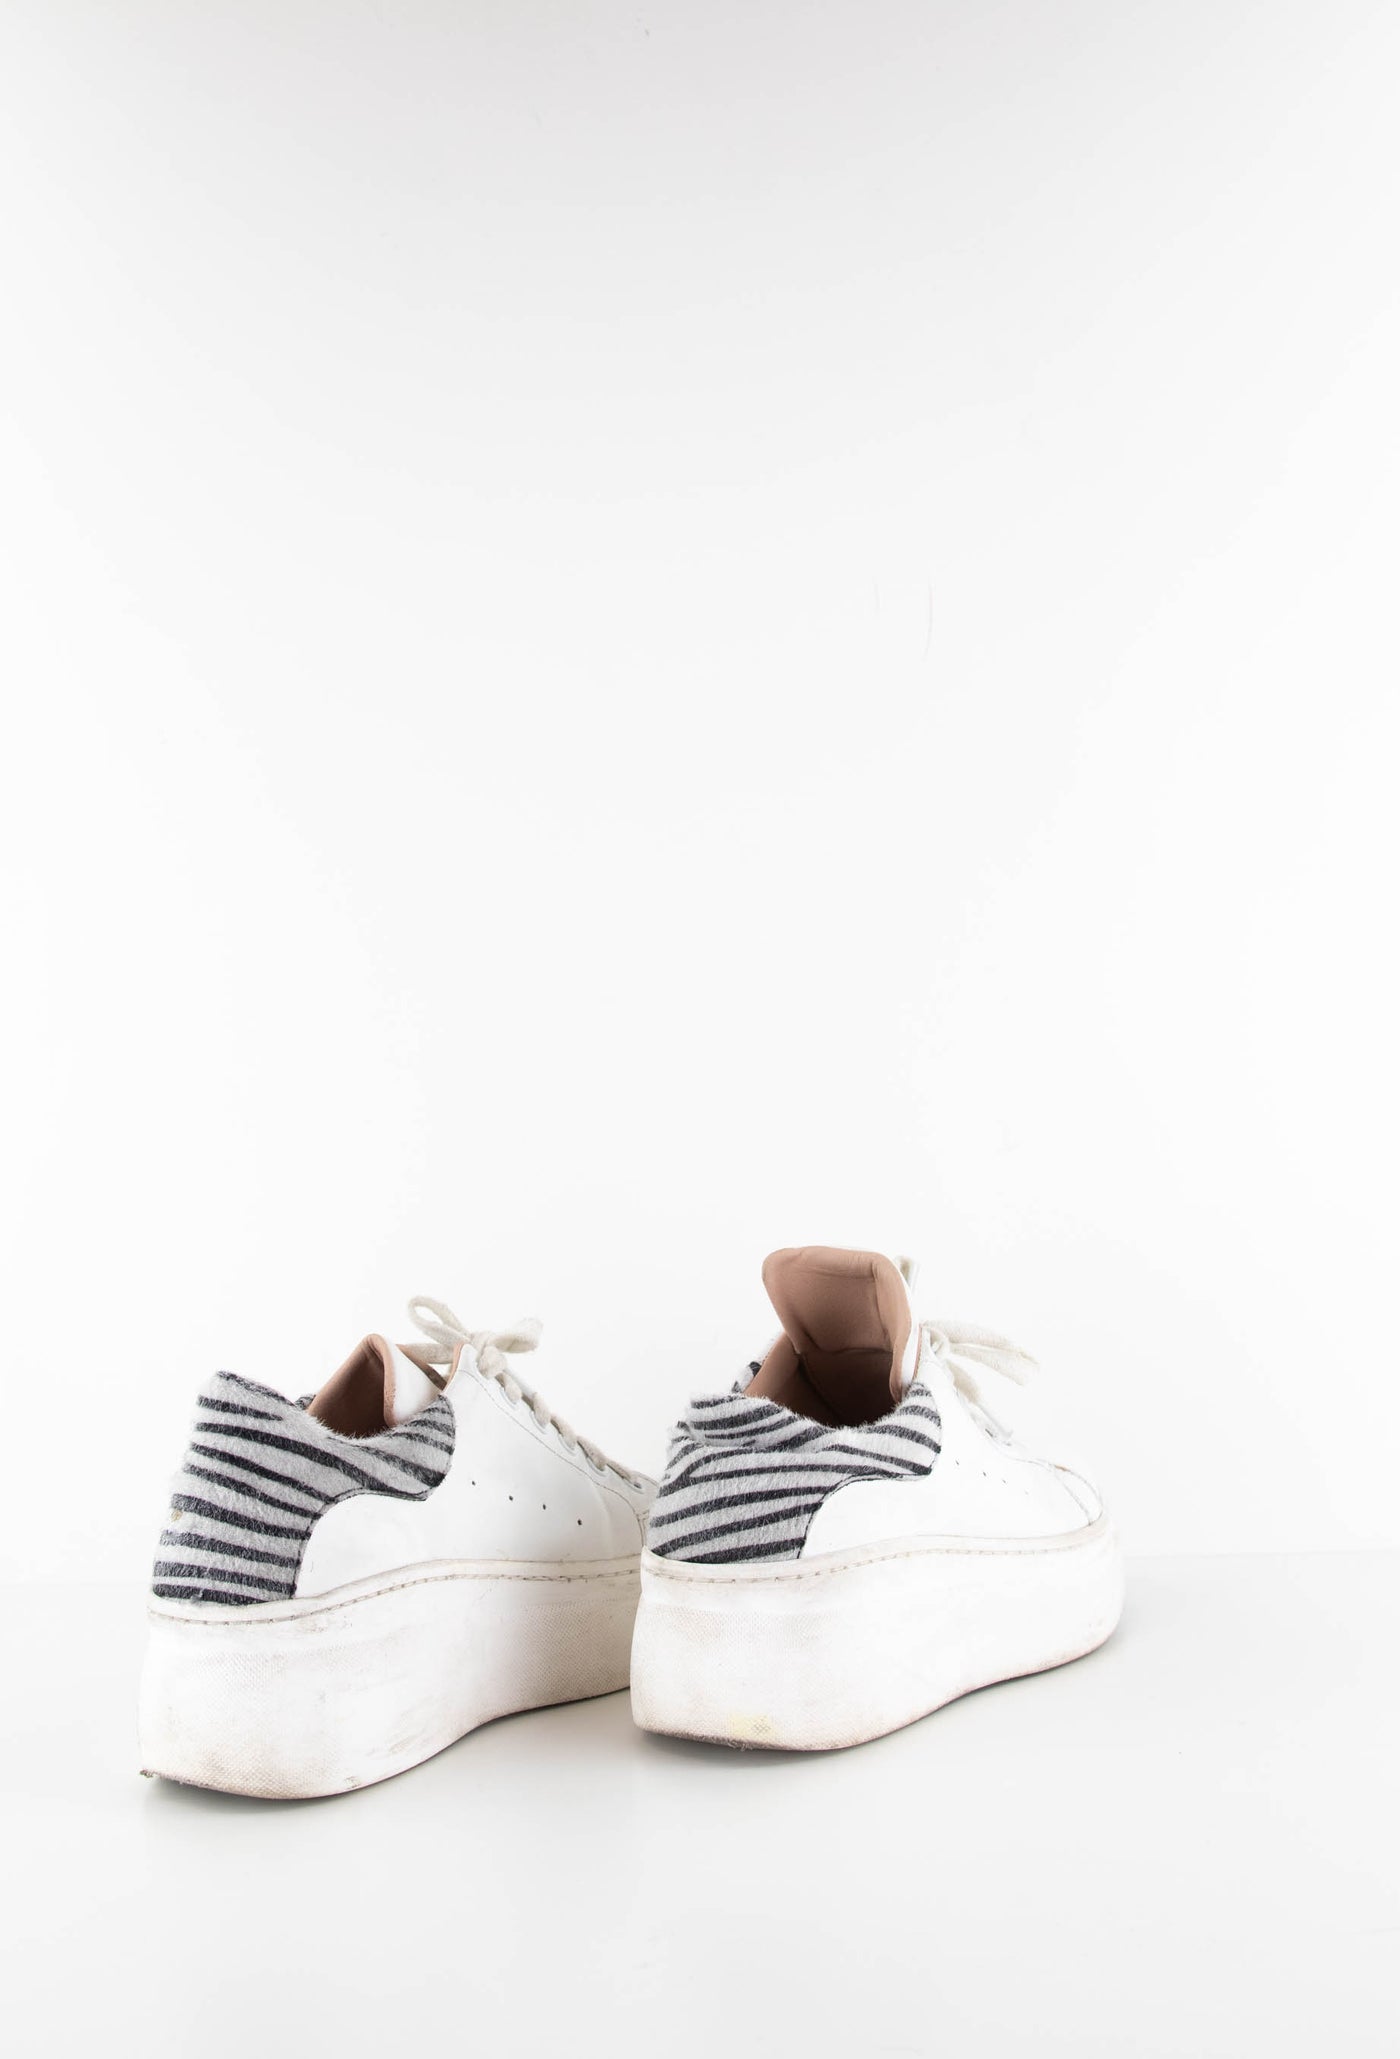 Zapatillas blancas detalles de zebra